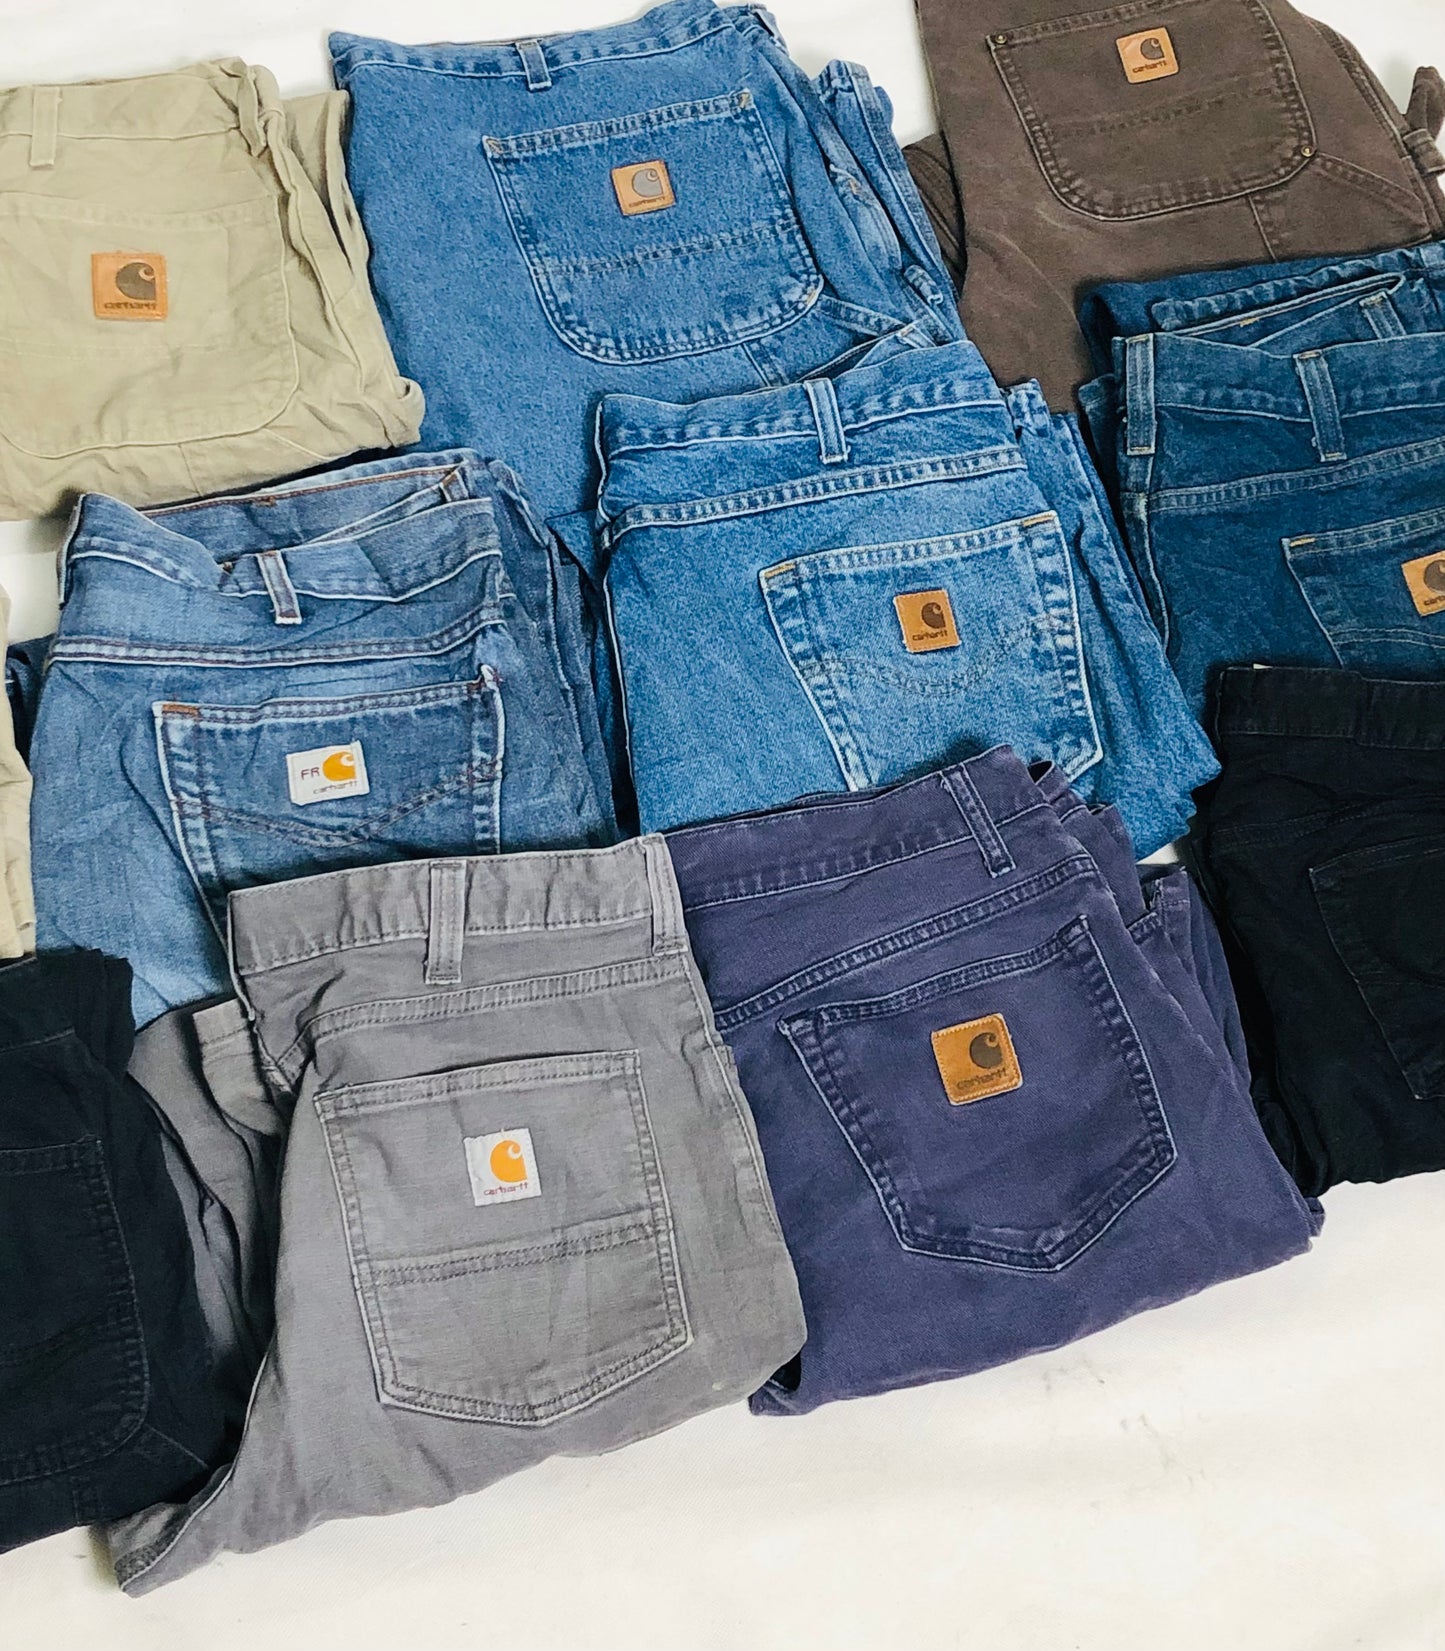 Carhartt Denim Jeans Bundle of 25 pcs